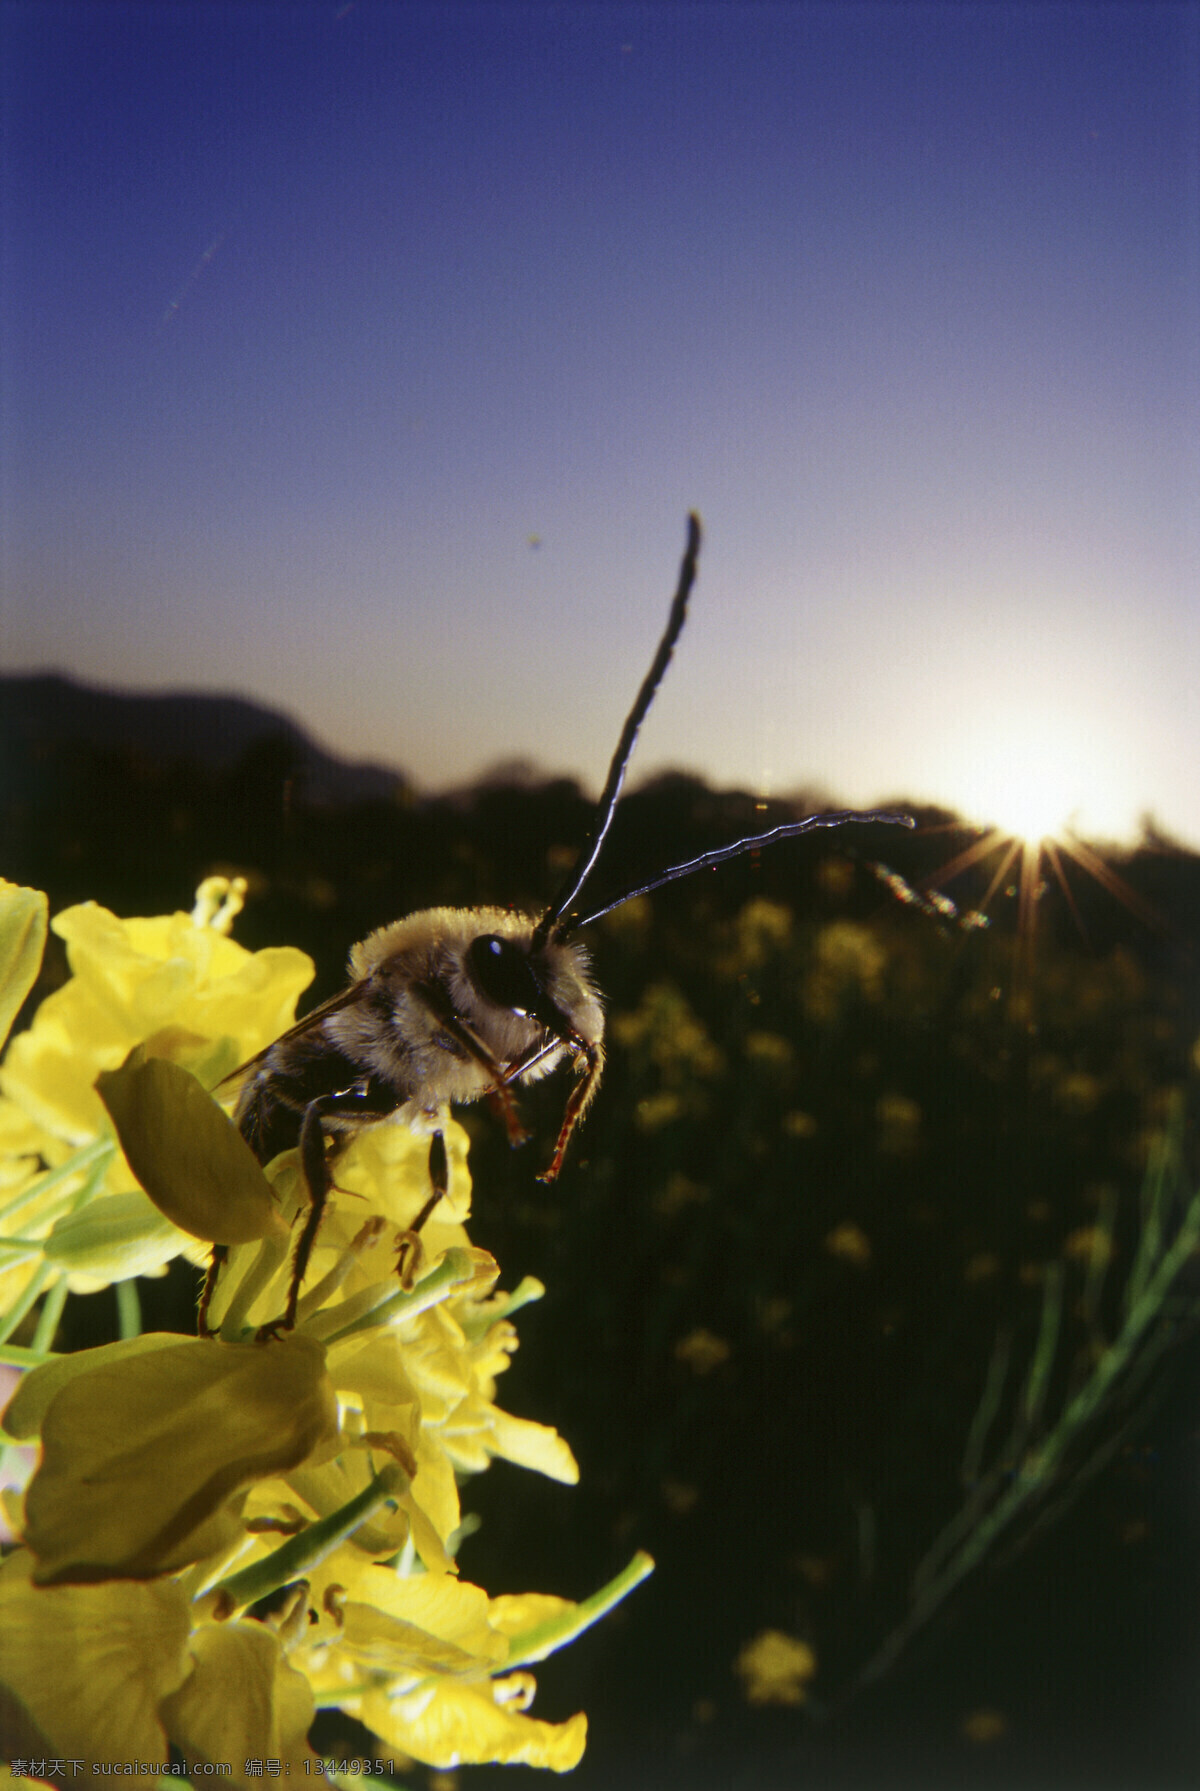 正在 采 蜜 蜜蜂 小蜜蜂 采蜜 蜜蜂特写 美丽鲜花 花丛 花朵 动物世界 昆虫世界 花草树木 生态环境 生物世界 野外 自然界 自然生物 自然生态 高清图片 自然 植物 户外 黑色